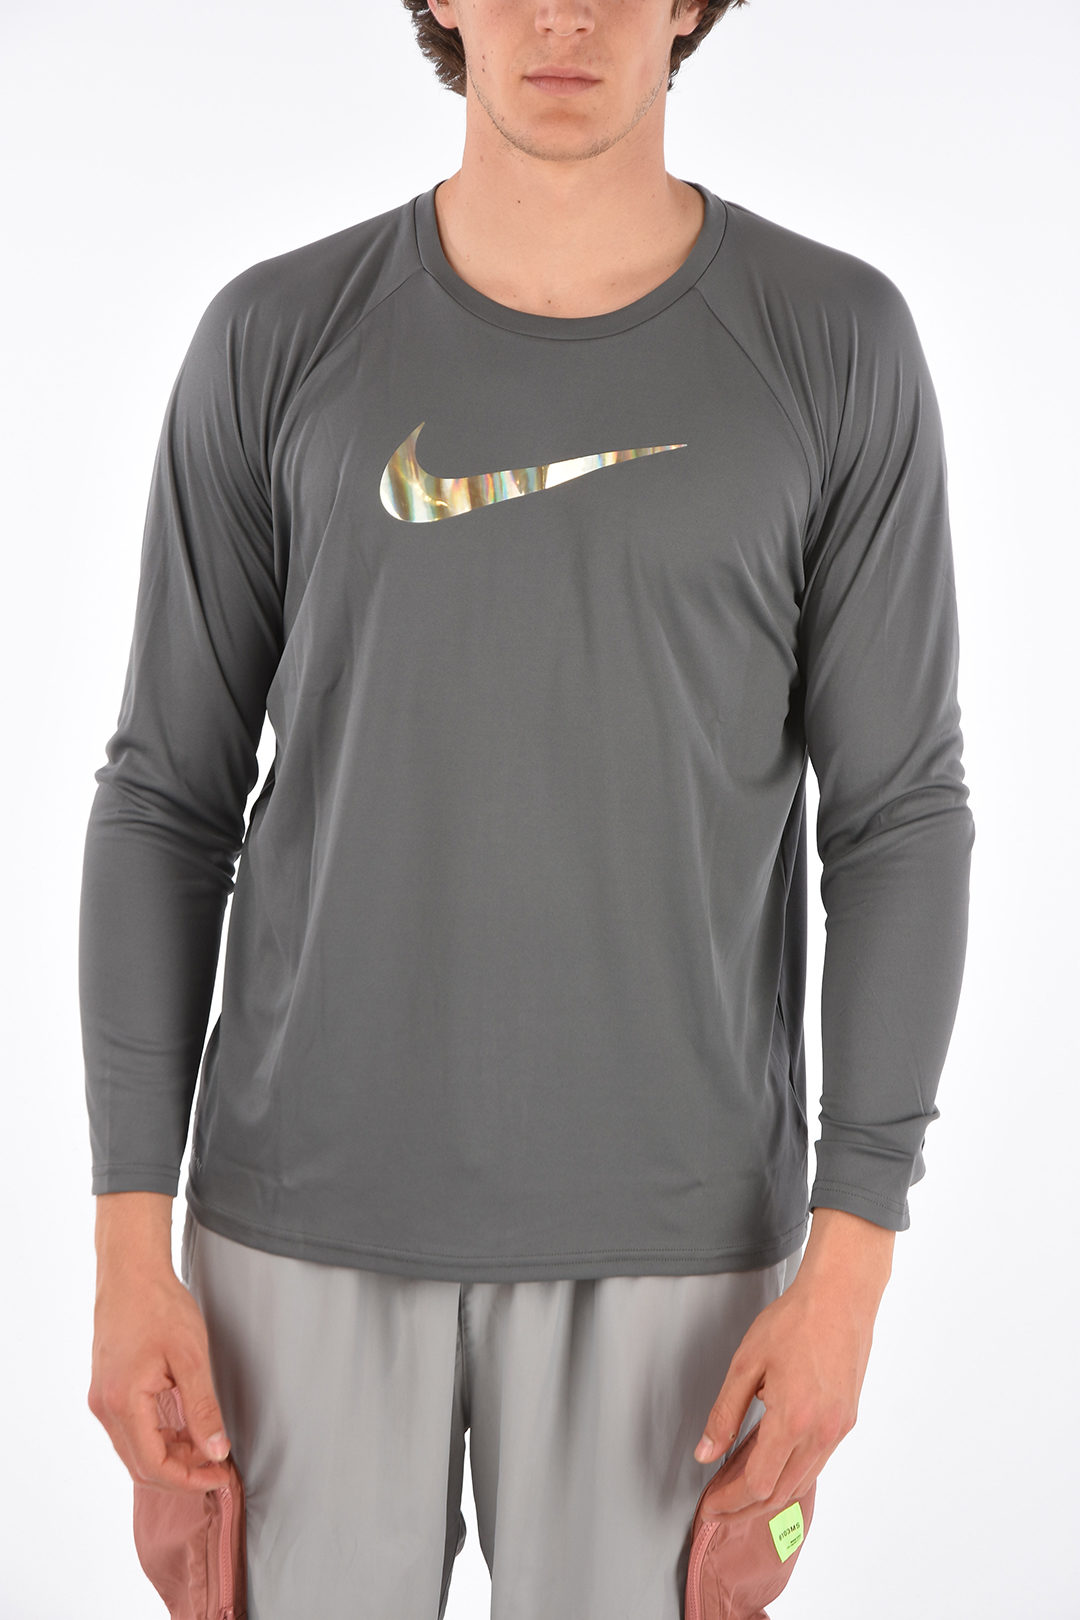 Nike Logo Printed T-shirt men -